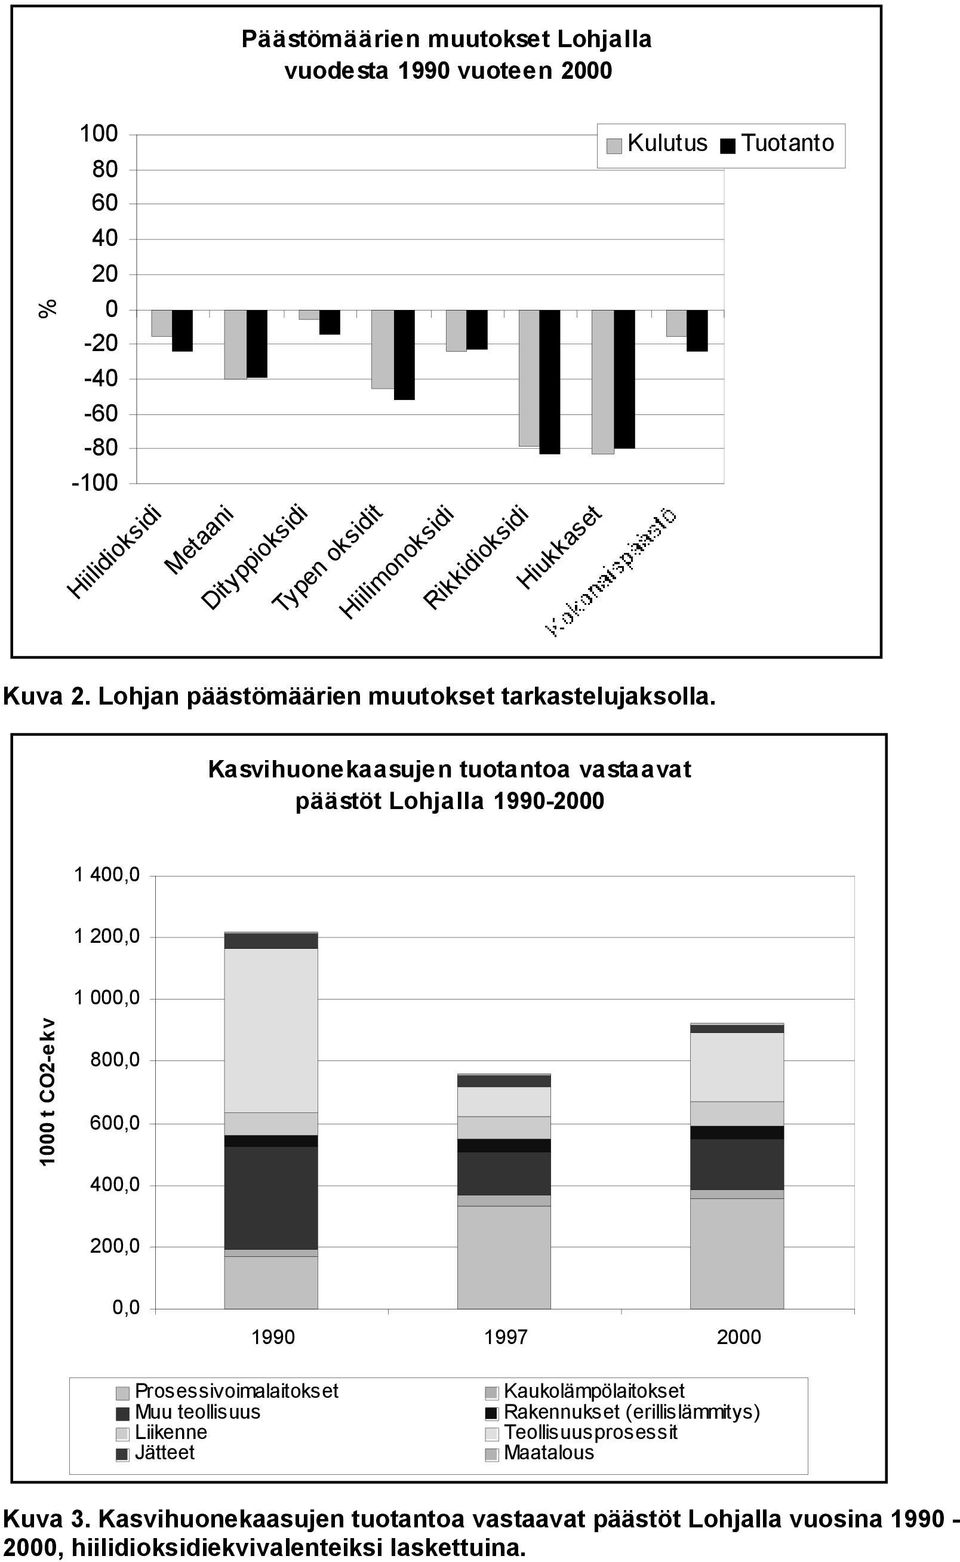 Kasvihuonekaasujen tuotantoa vastaavat päästöt Lohjalla 1990-2000 1 400,0 1 200,0 1 000,0 1000 t CO2-ekv 800,0 600,0 400,0 200,0 0,0 1990 1997 2000